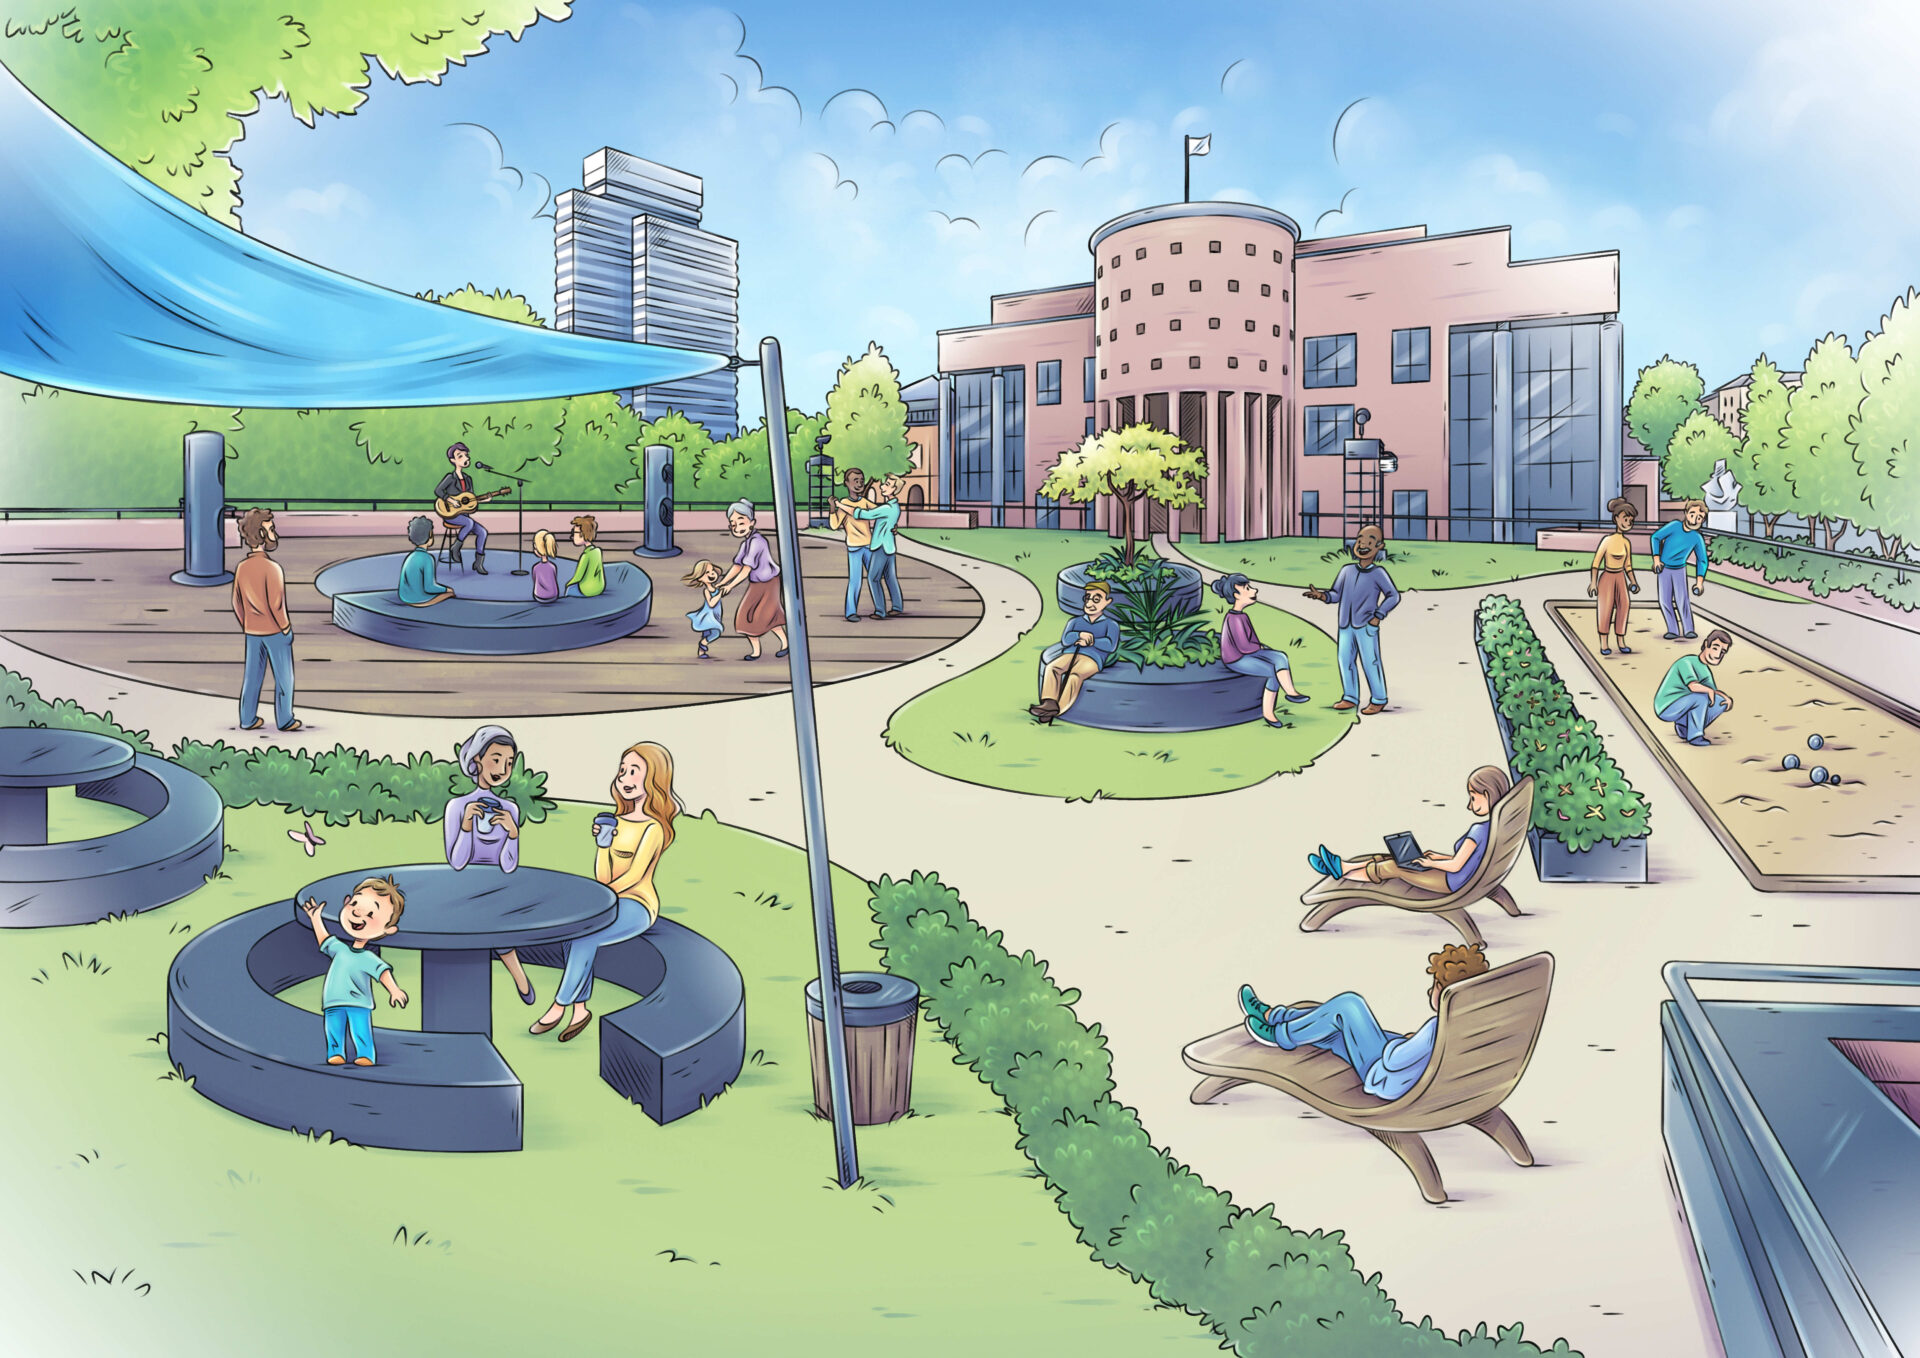 Zeichnung eines öffentlichen Platzes, ähnlich wie ein Park, mit angelegten Wegen, Sitzmöglichkeiten, einer kleinen Bühne, auf der Musik gemacht wird. Rechts im Bild eine Boulebahn, auf der Menschen Boule spielen. Im Hintergrund ein Hochhaus und ein rötliches Gebäude mit einer Rotunde.